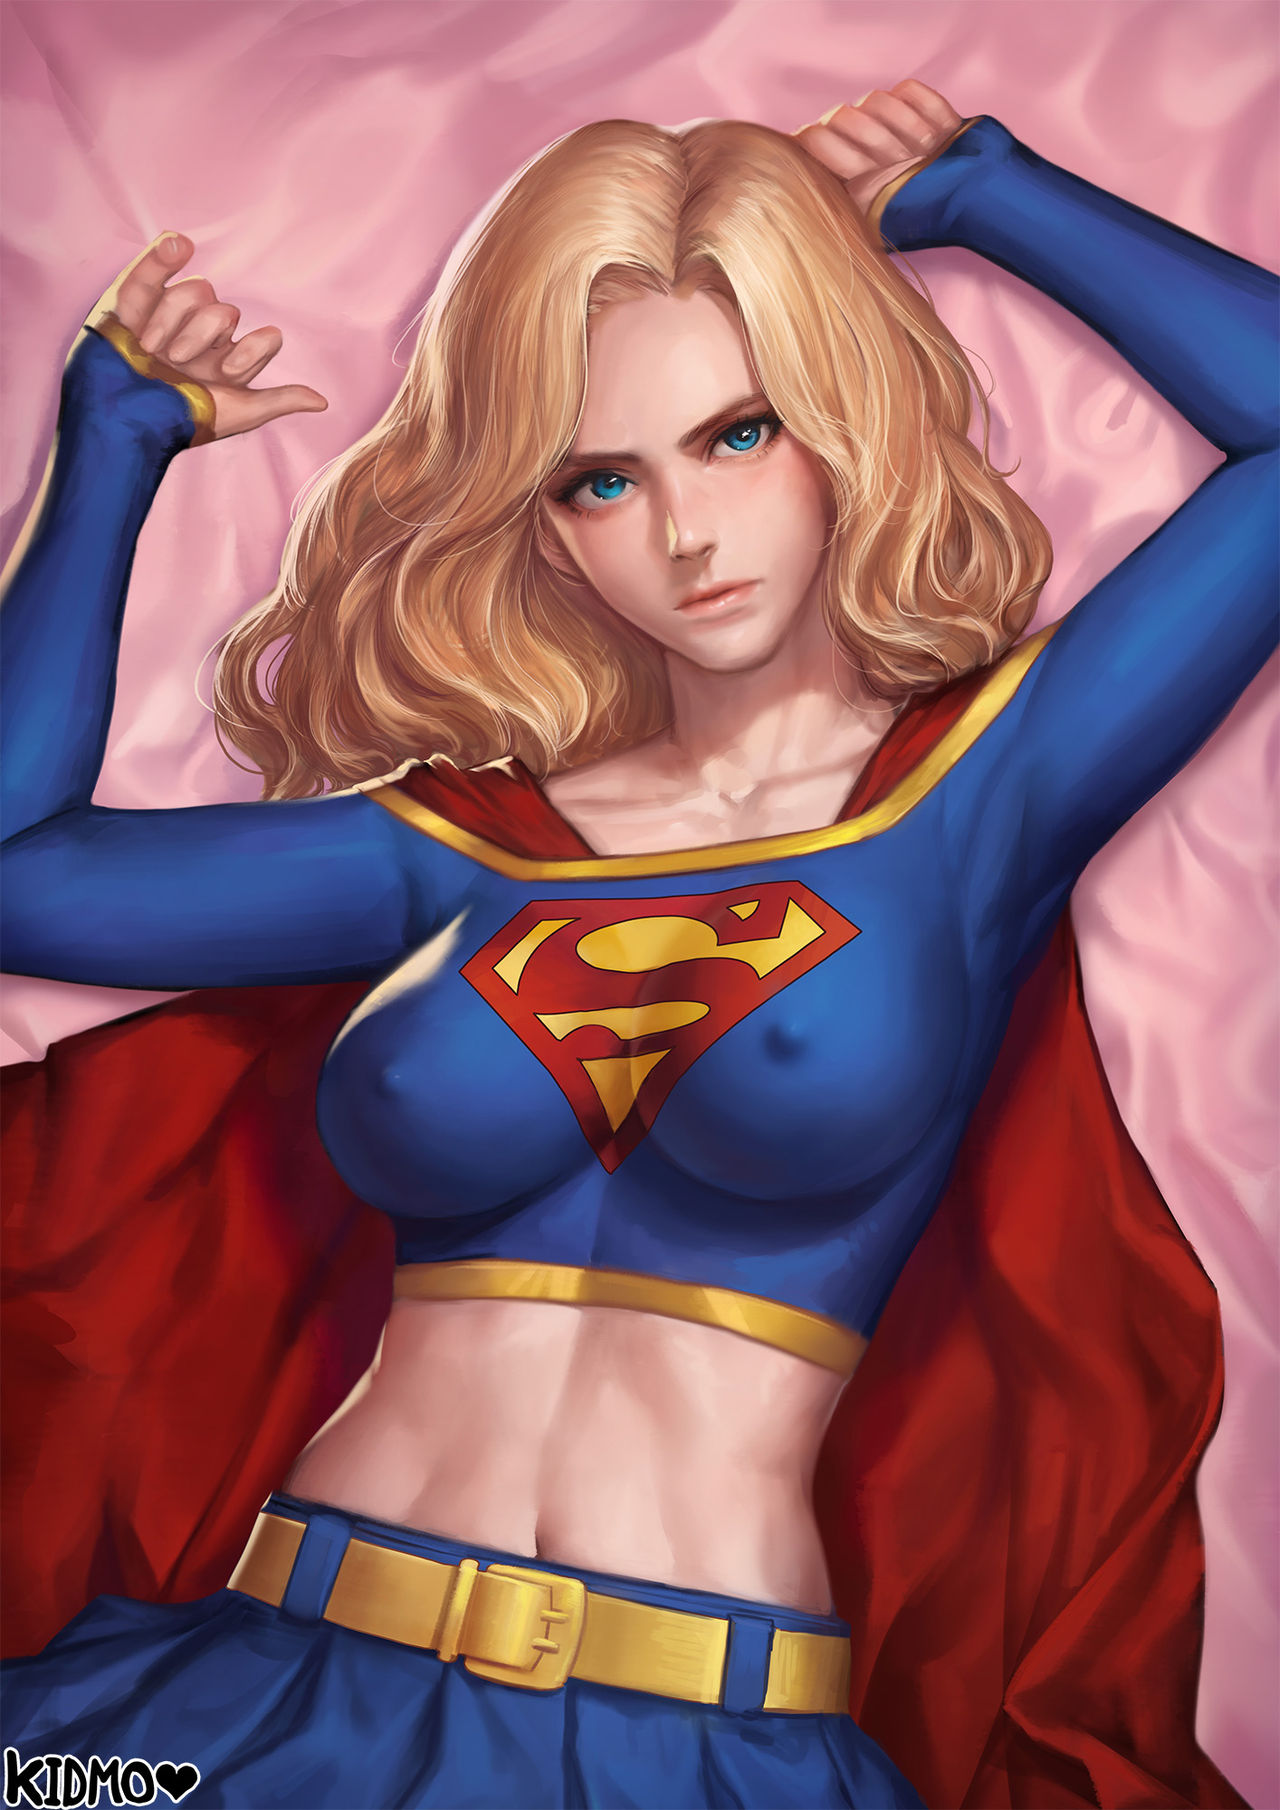 [Kidmo] Supergirl R18 Comics (スーパーガール) [無字]